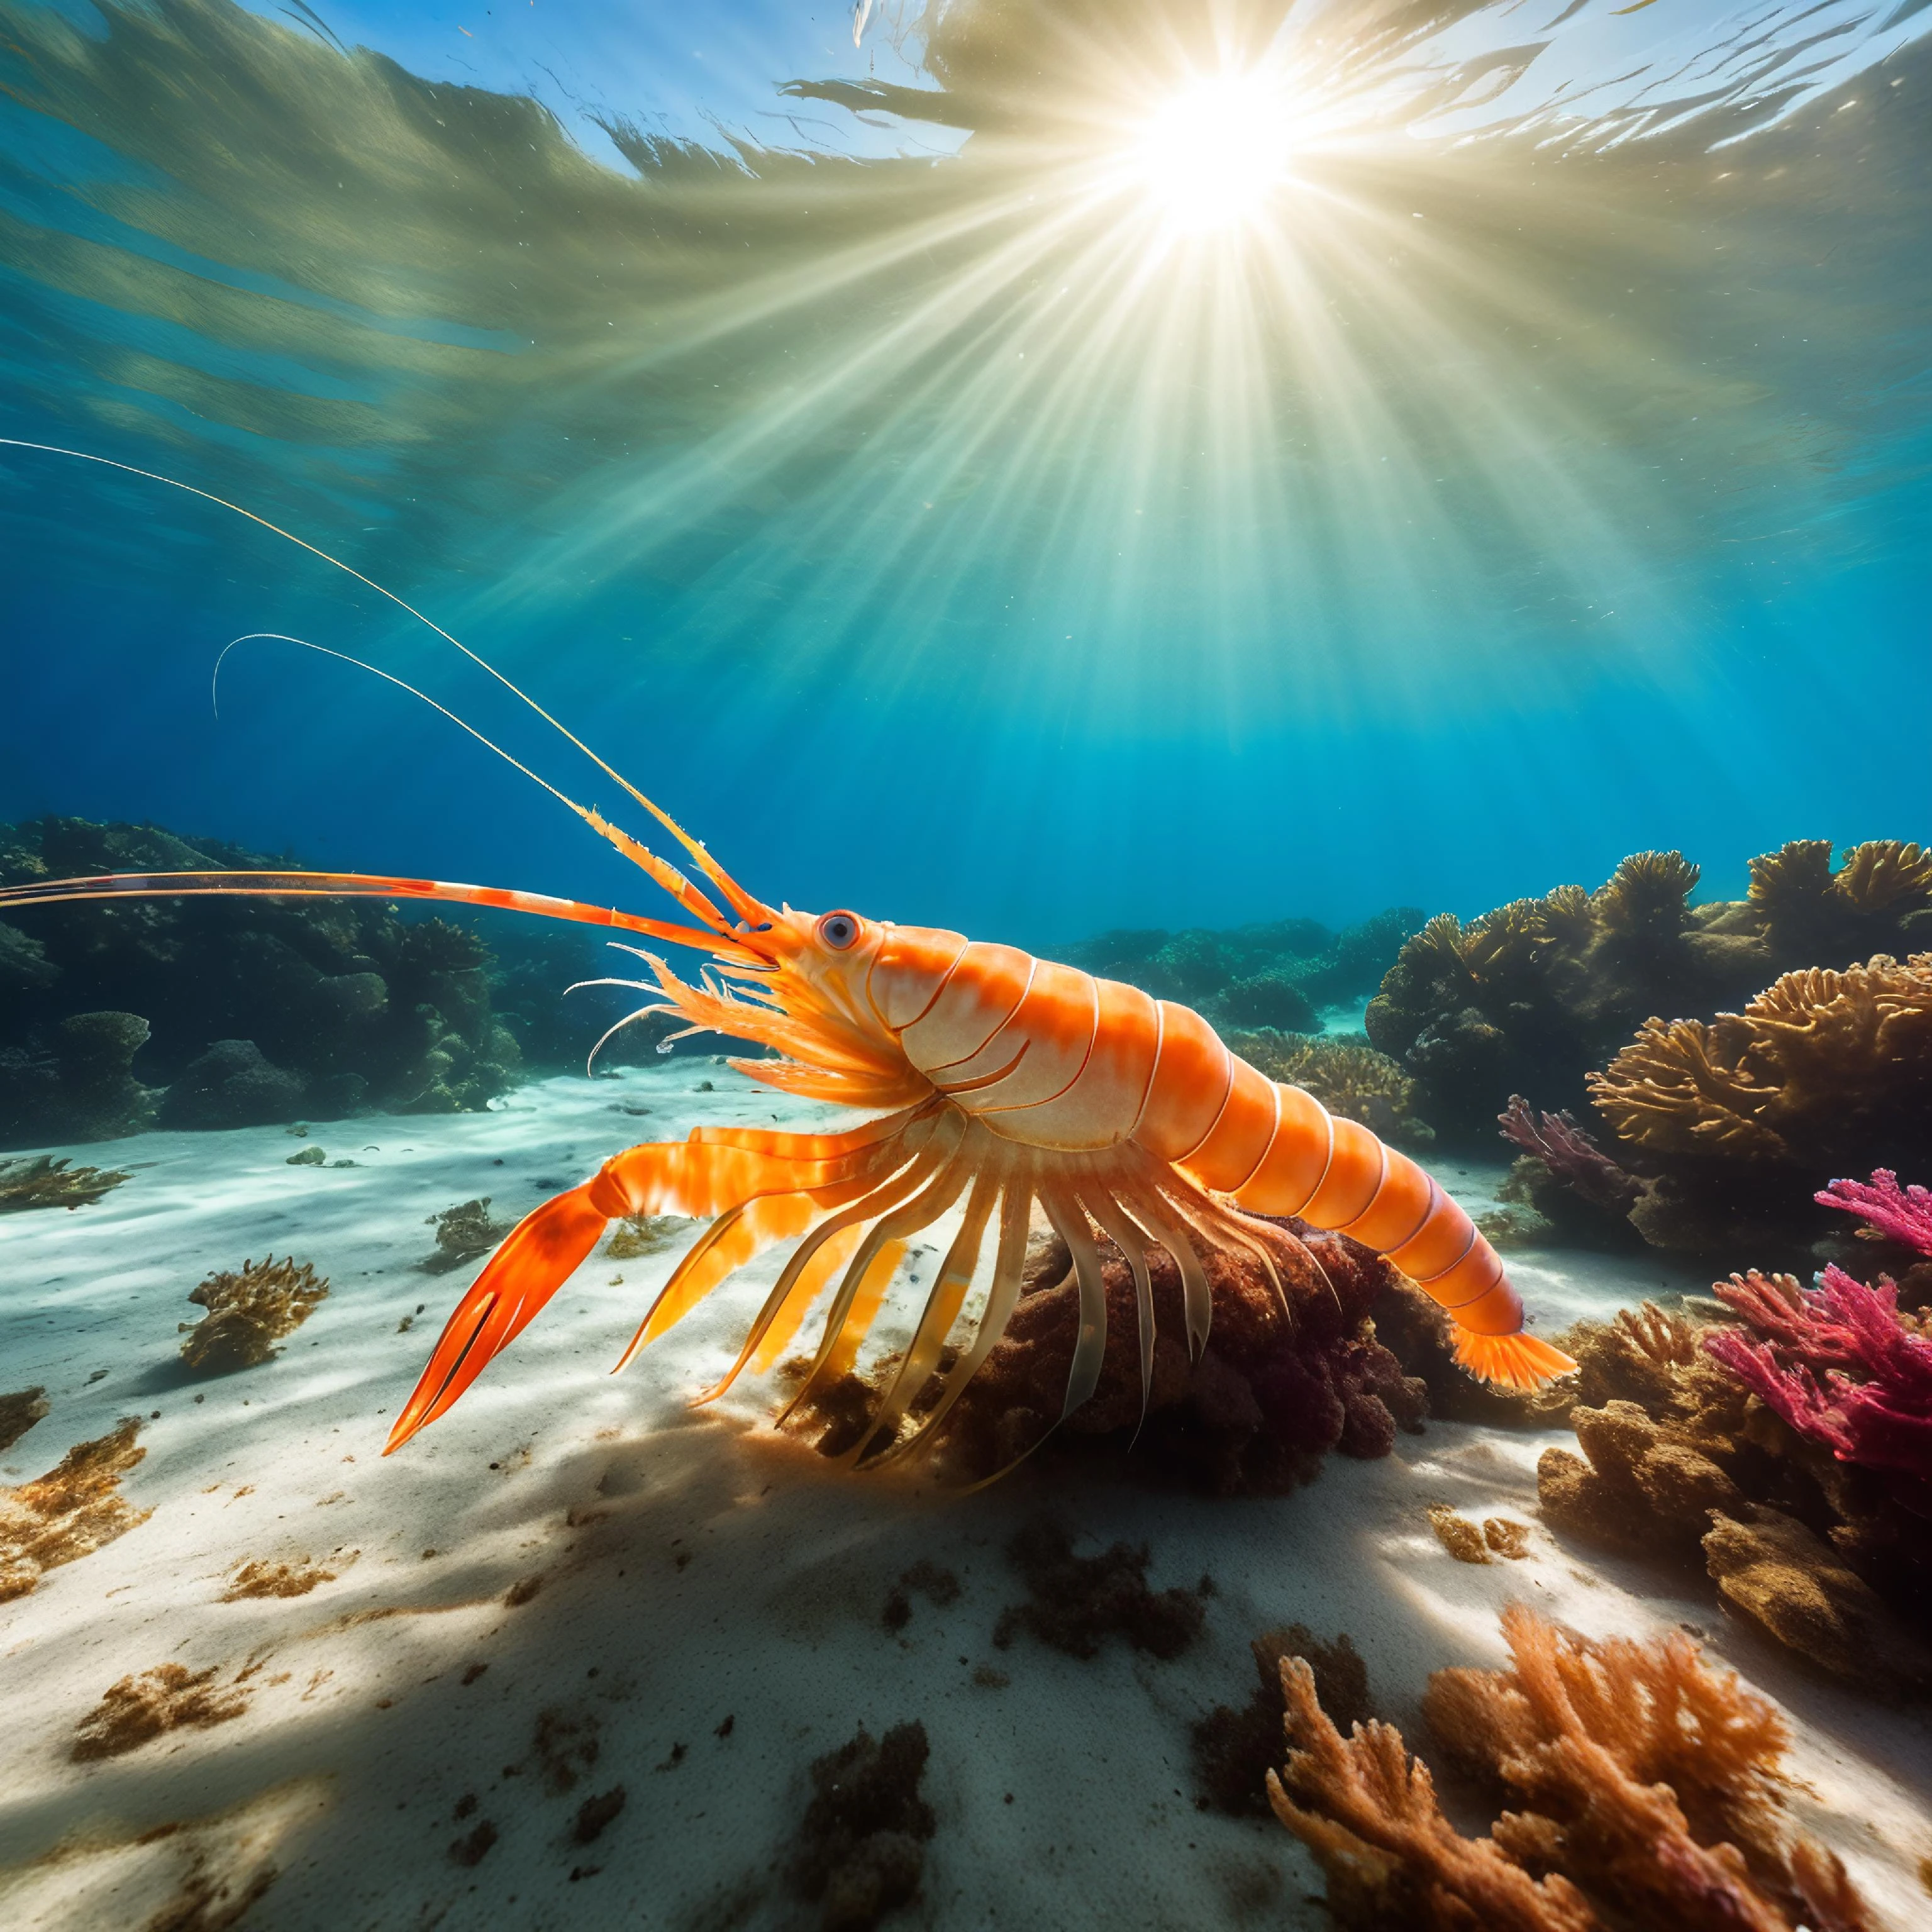 صور الطبيعة تحت الماء, جمبري عملاق يركض على طول قاع البحر, مطاردة قطعة عائمة من الأعشاب البحرية, تصفية ضوء الشمس من خلال الماء, قاع البحر الرملي, ألوان نابضة بالحياة